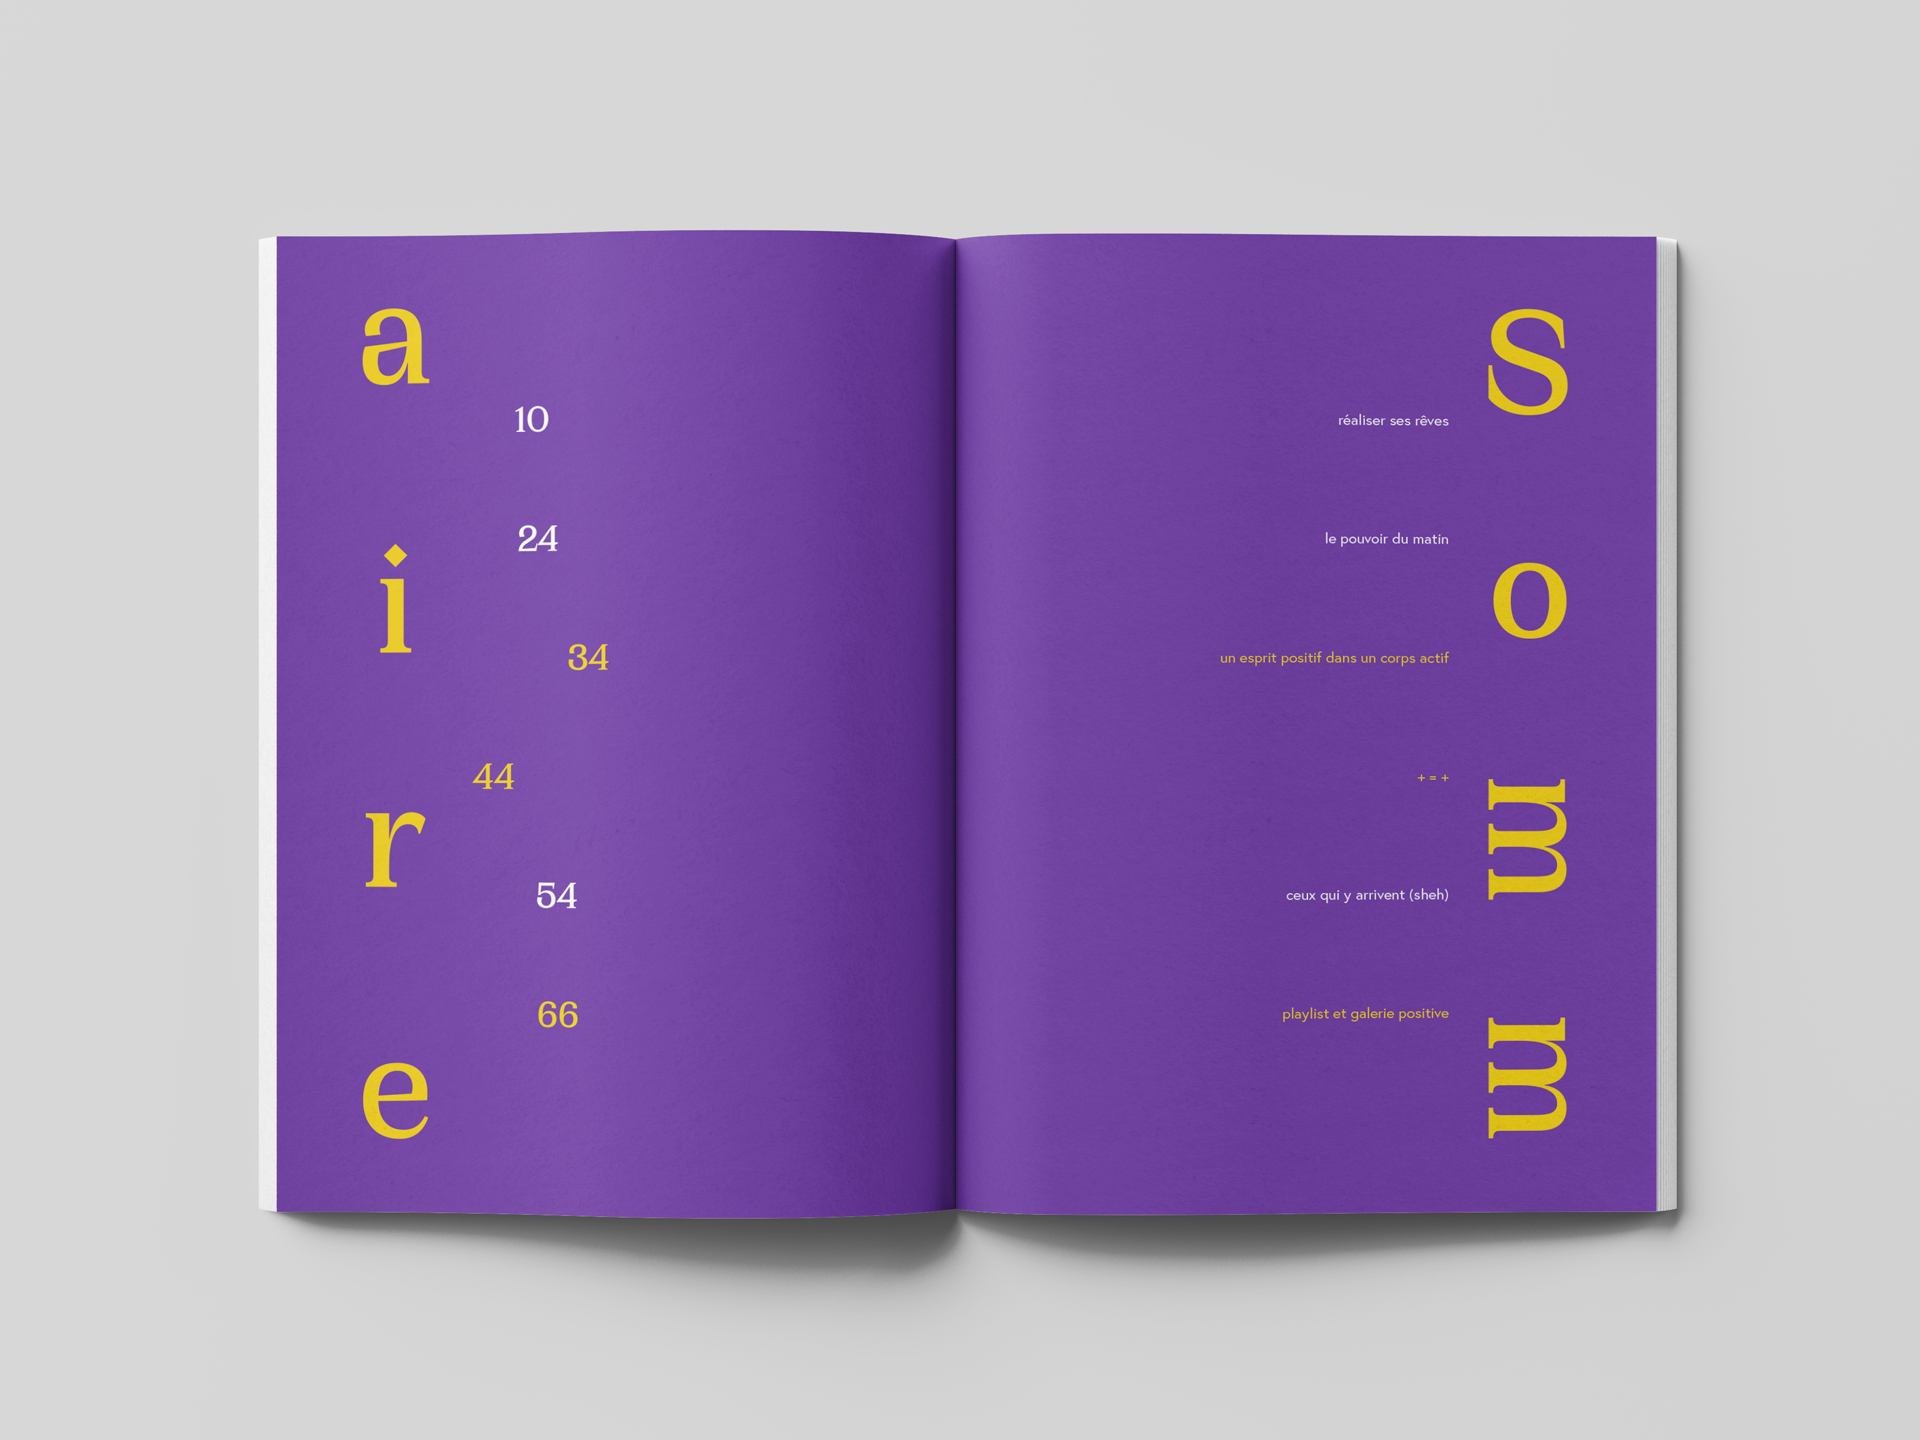 Sommaire du numéro "chasser le négatif". La double page est majoritairement violette, le mot sommaire étant écrit avec une typographie incisive et jaune et les différente catégories et la pagination dans une typo plus classique, alternant entre du jaune et du blanc.